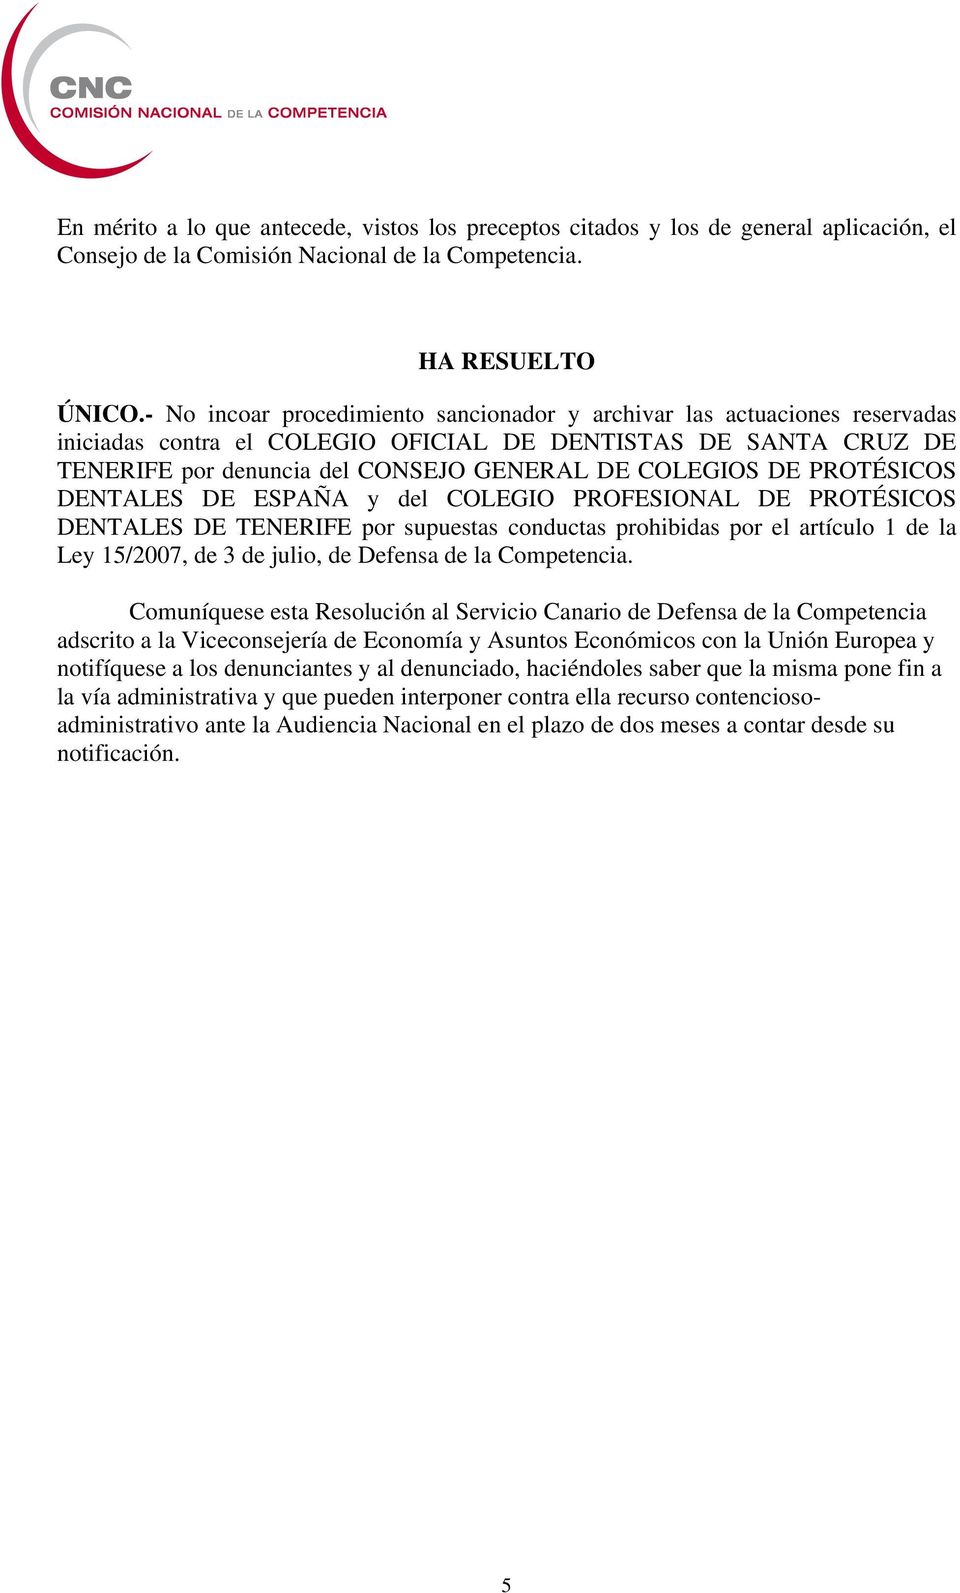 PROTÉSICOS DENTALES DE ESPAÑA y del COLEGIO PROFESIONAL DE PROTÉSICOS DENTALES DE TENERIFE por supuestas conductas prohibidas por el artículo 1 de la Ley 15/2007, de 3 de julio, de Defensa de la